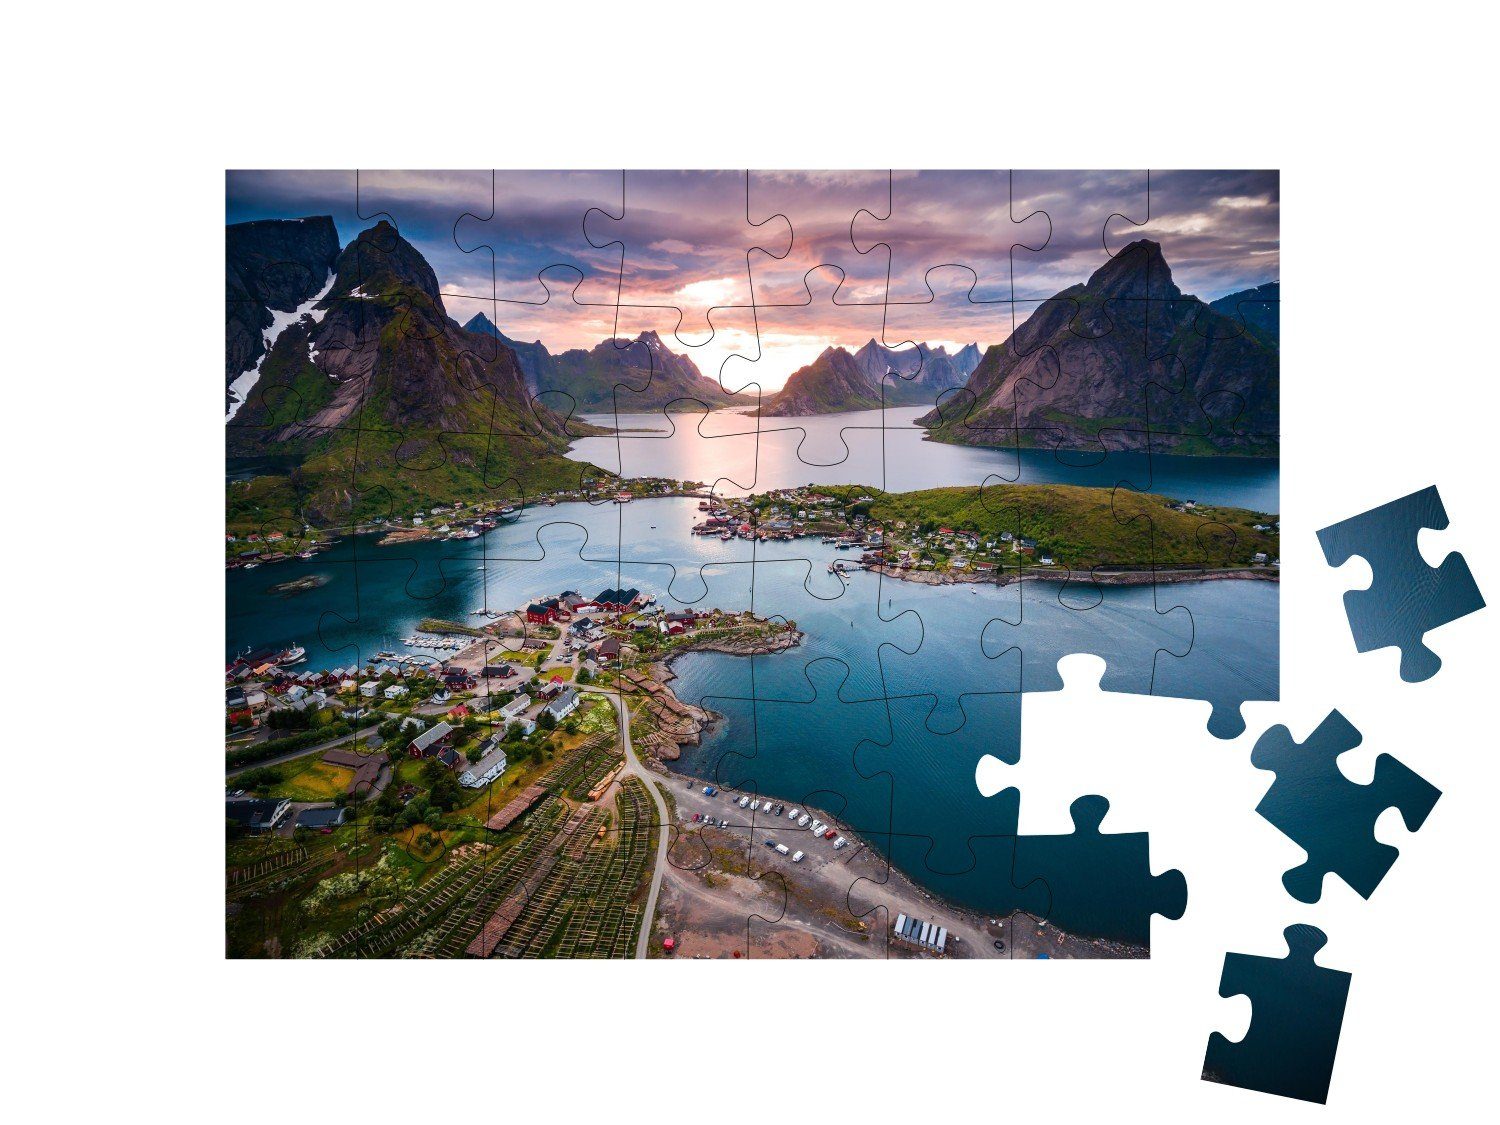 puzzleYOU Puzzle Unverwechselbare Landschaft der 48 Lofoten Lofoten, Norwegen, puzzleYOU-Kollektionen Puzzleteile